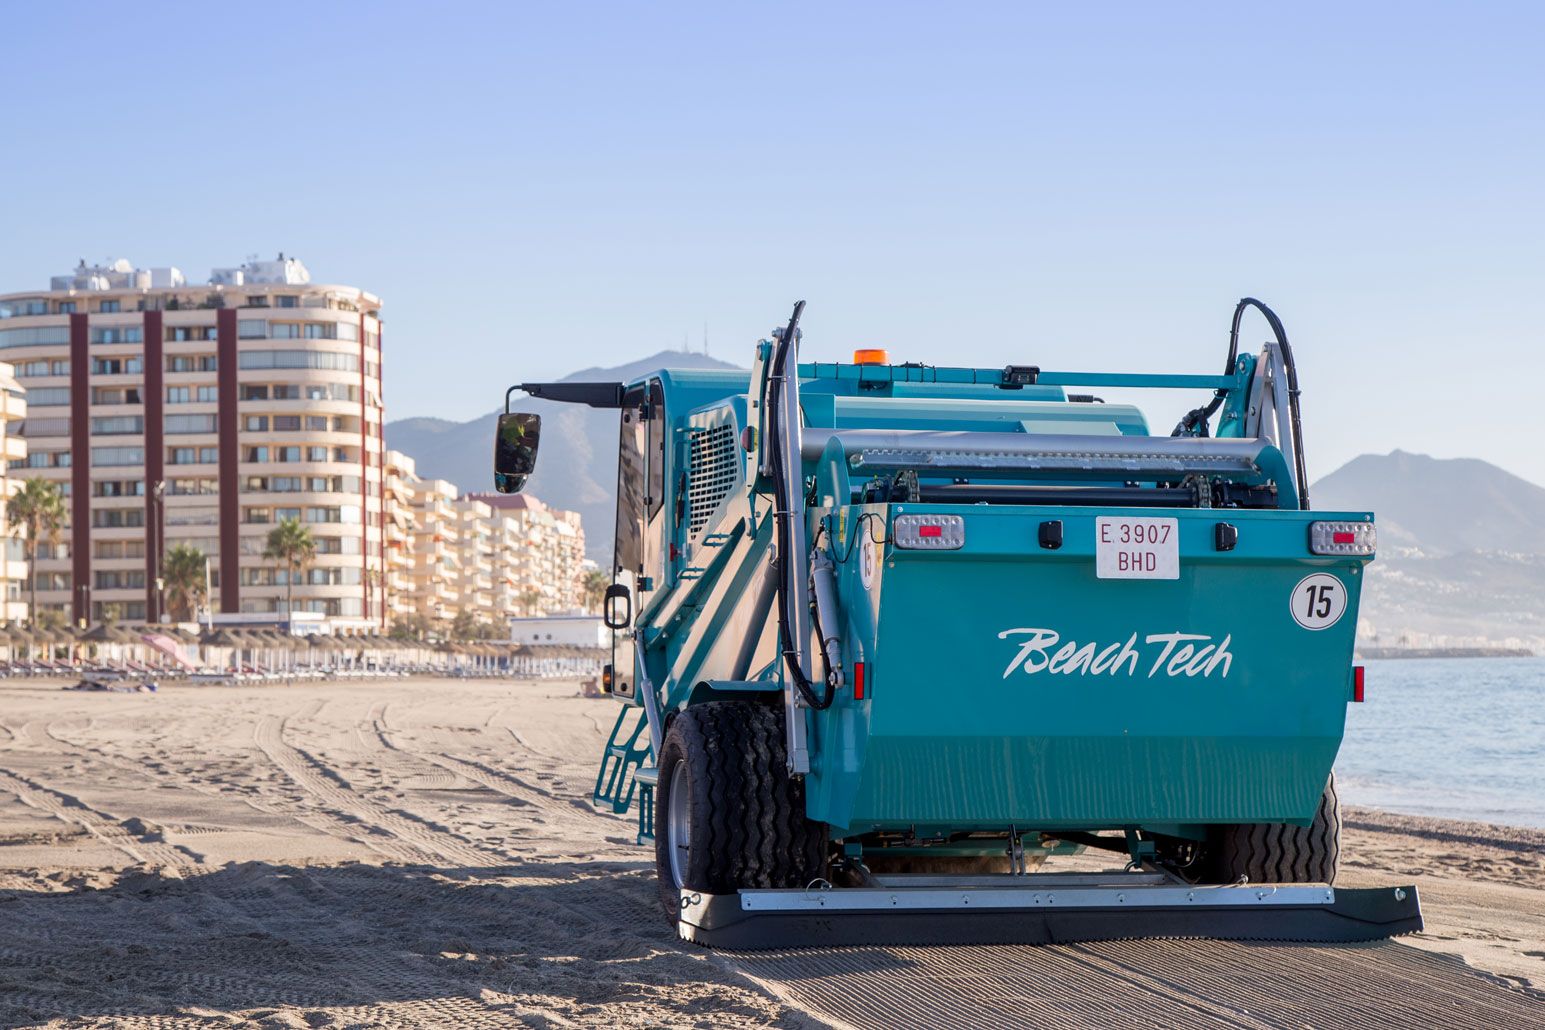 Nettoyeur de plage autopropulsé BeachTech 5500 vue arrière à la plage